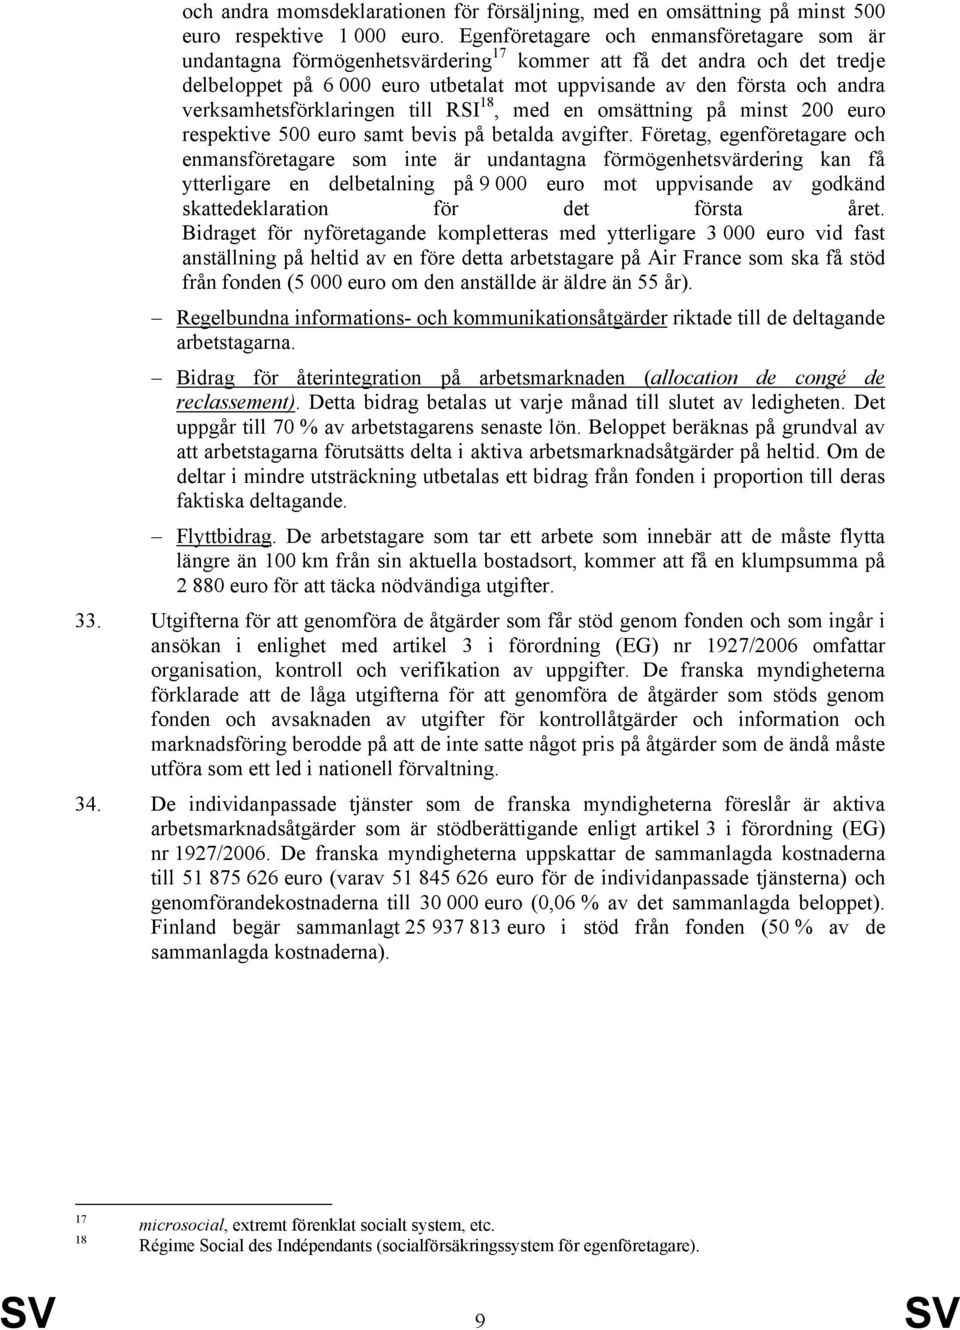 verksamhetsförklaringen till RSI 18, med en omsättning på minst 200 euro respektive 500 euro samt bevis på betalda avgifter.